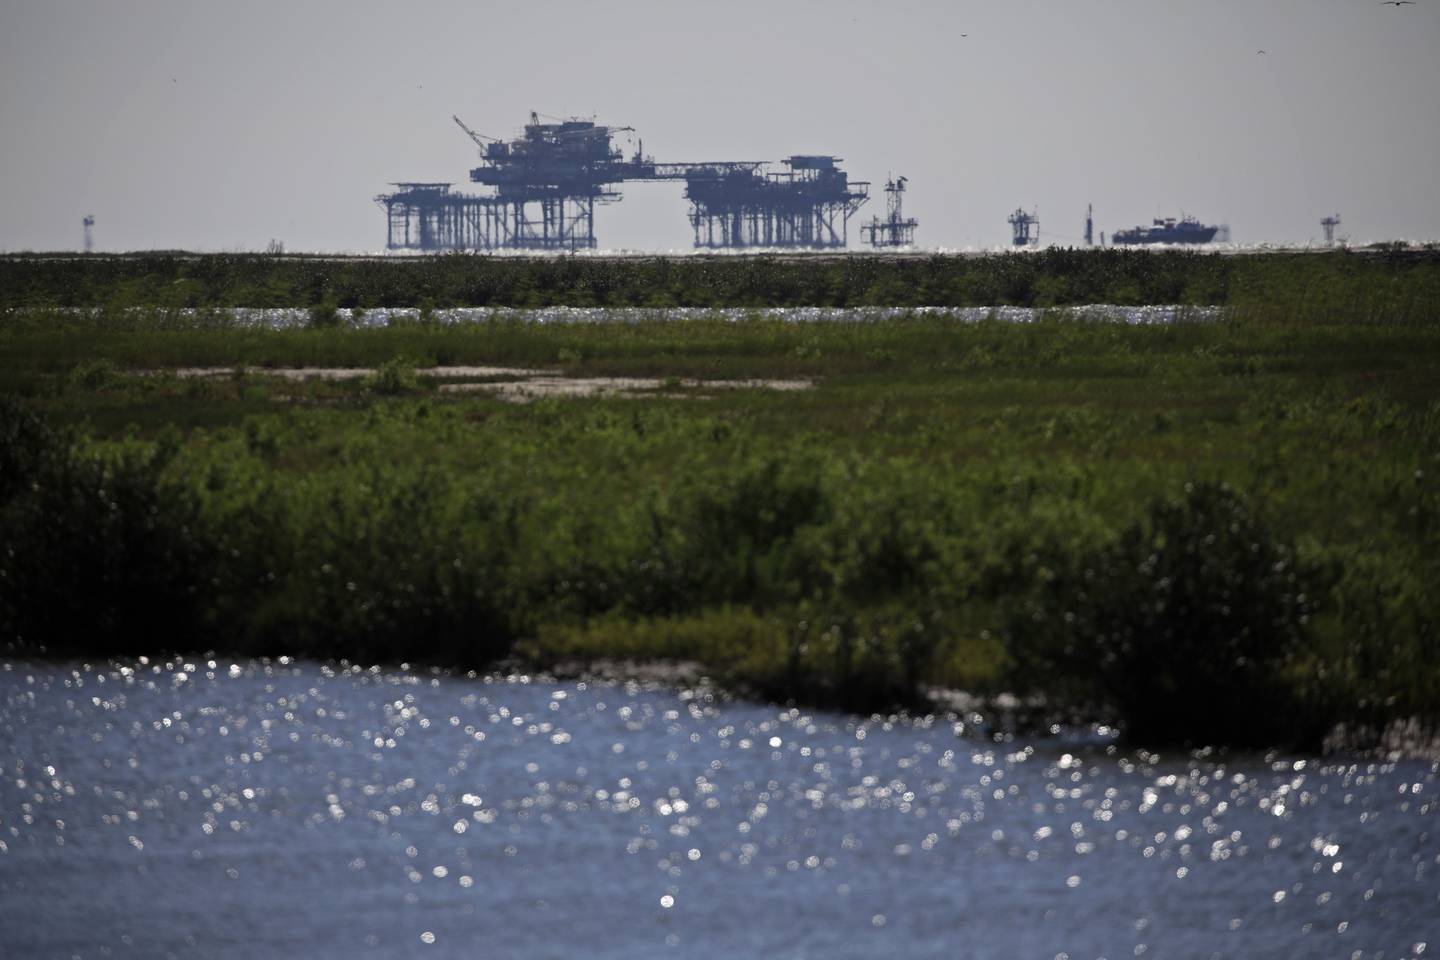 Plataformas de petróleo costa afuera en el golfo de México frente al puerto de Fourchon, Luisiana en abril.Fotógrafo: Luke Sharrett / Bloomberg